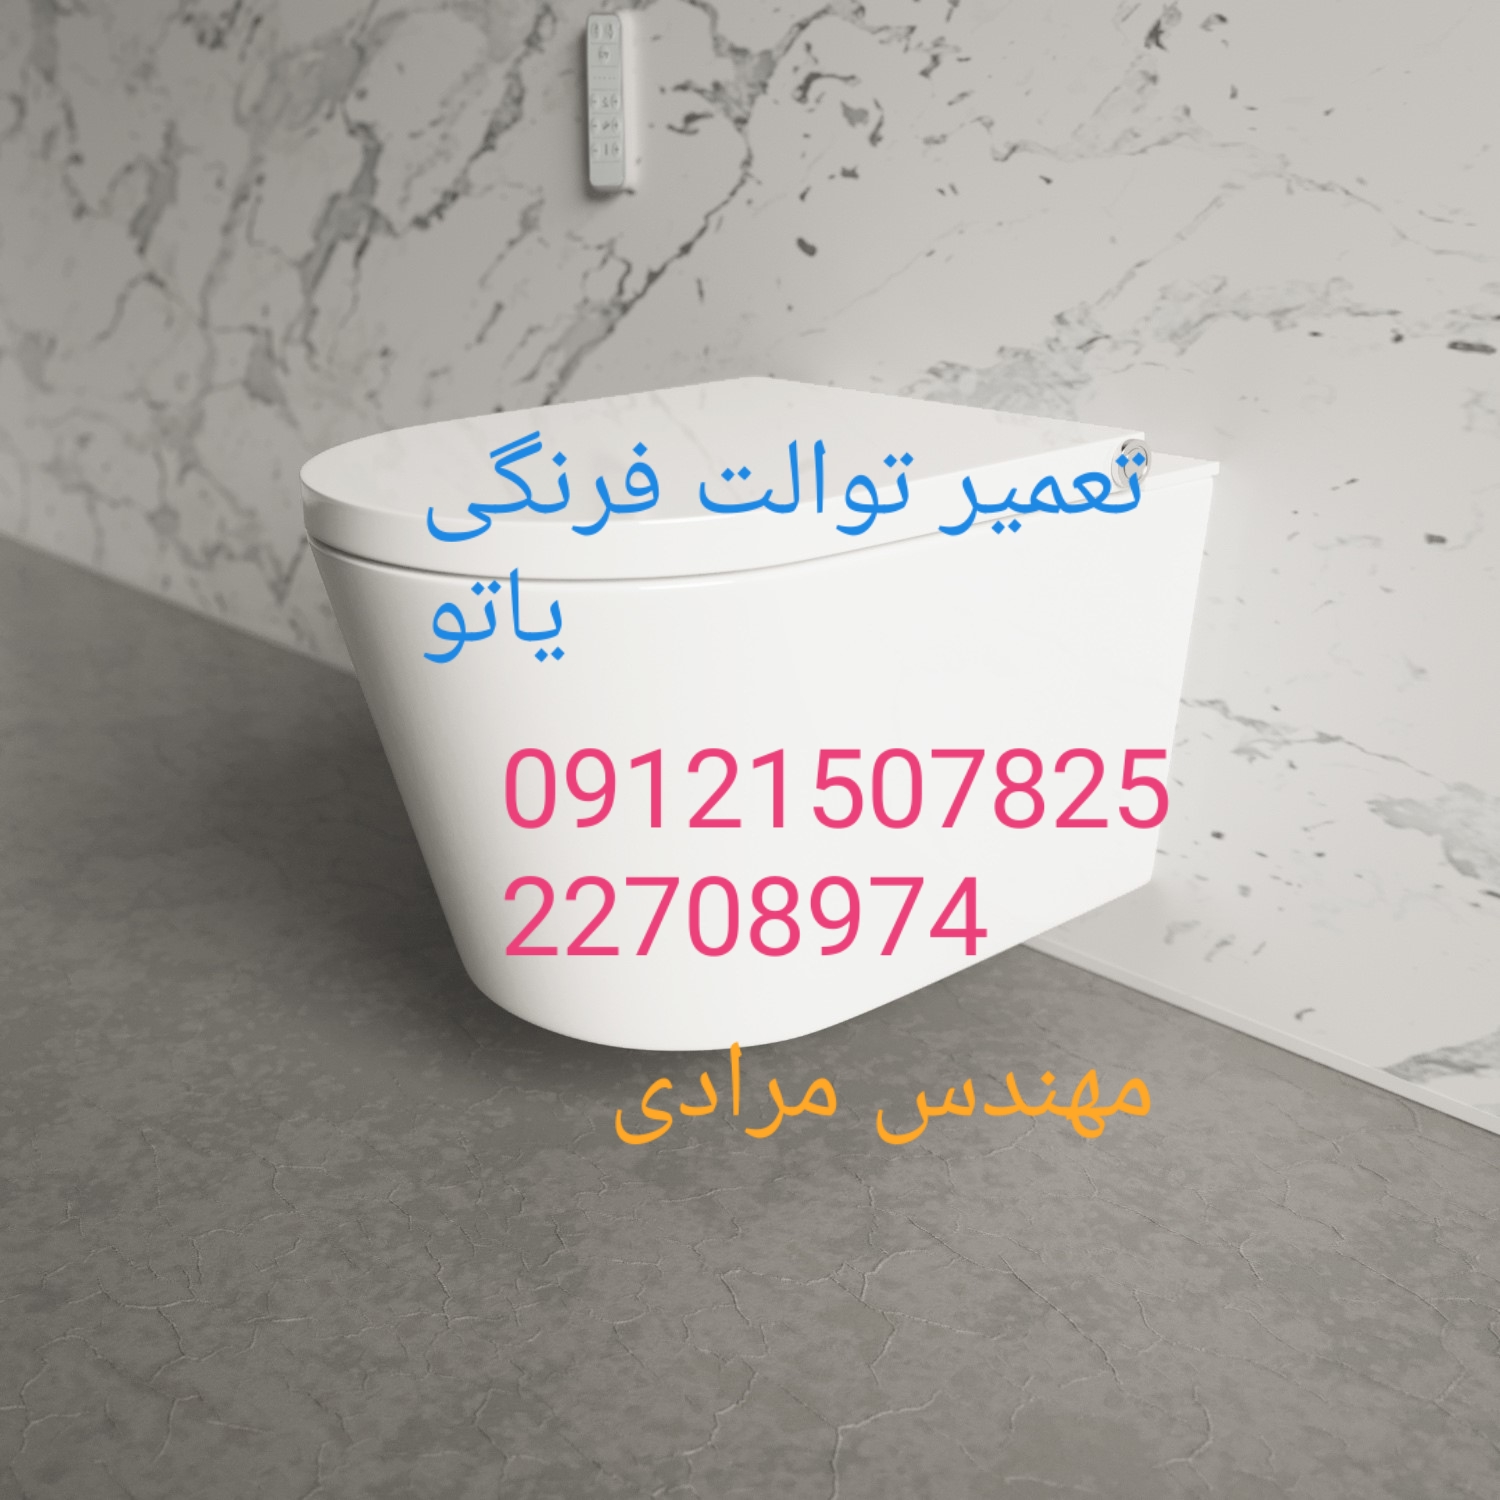 فروش و خدمات توالت فرنگی یاتو 09121507825 در تهران و البرز